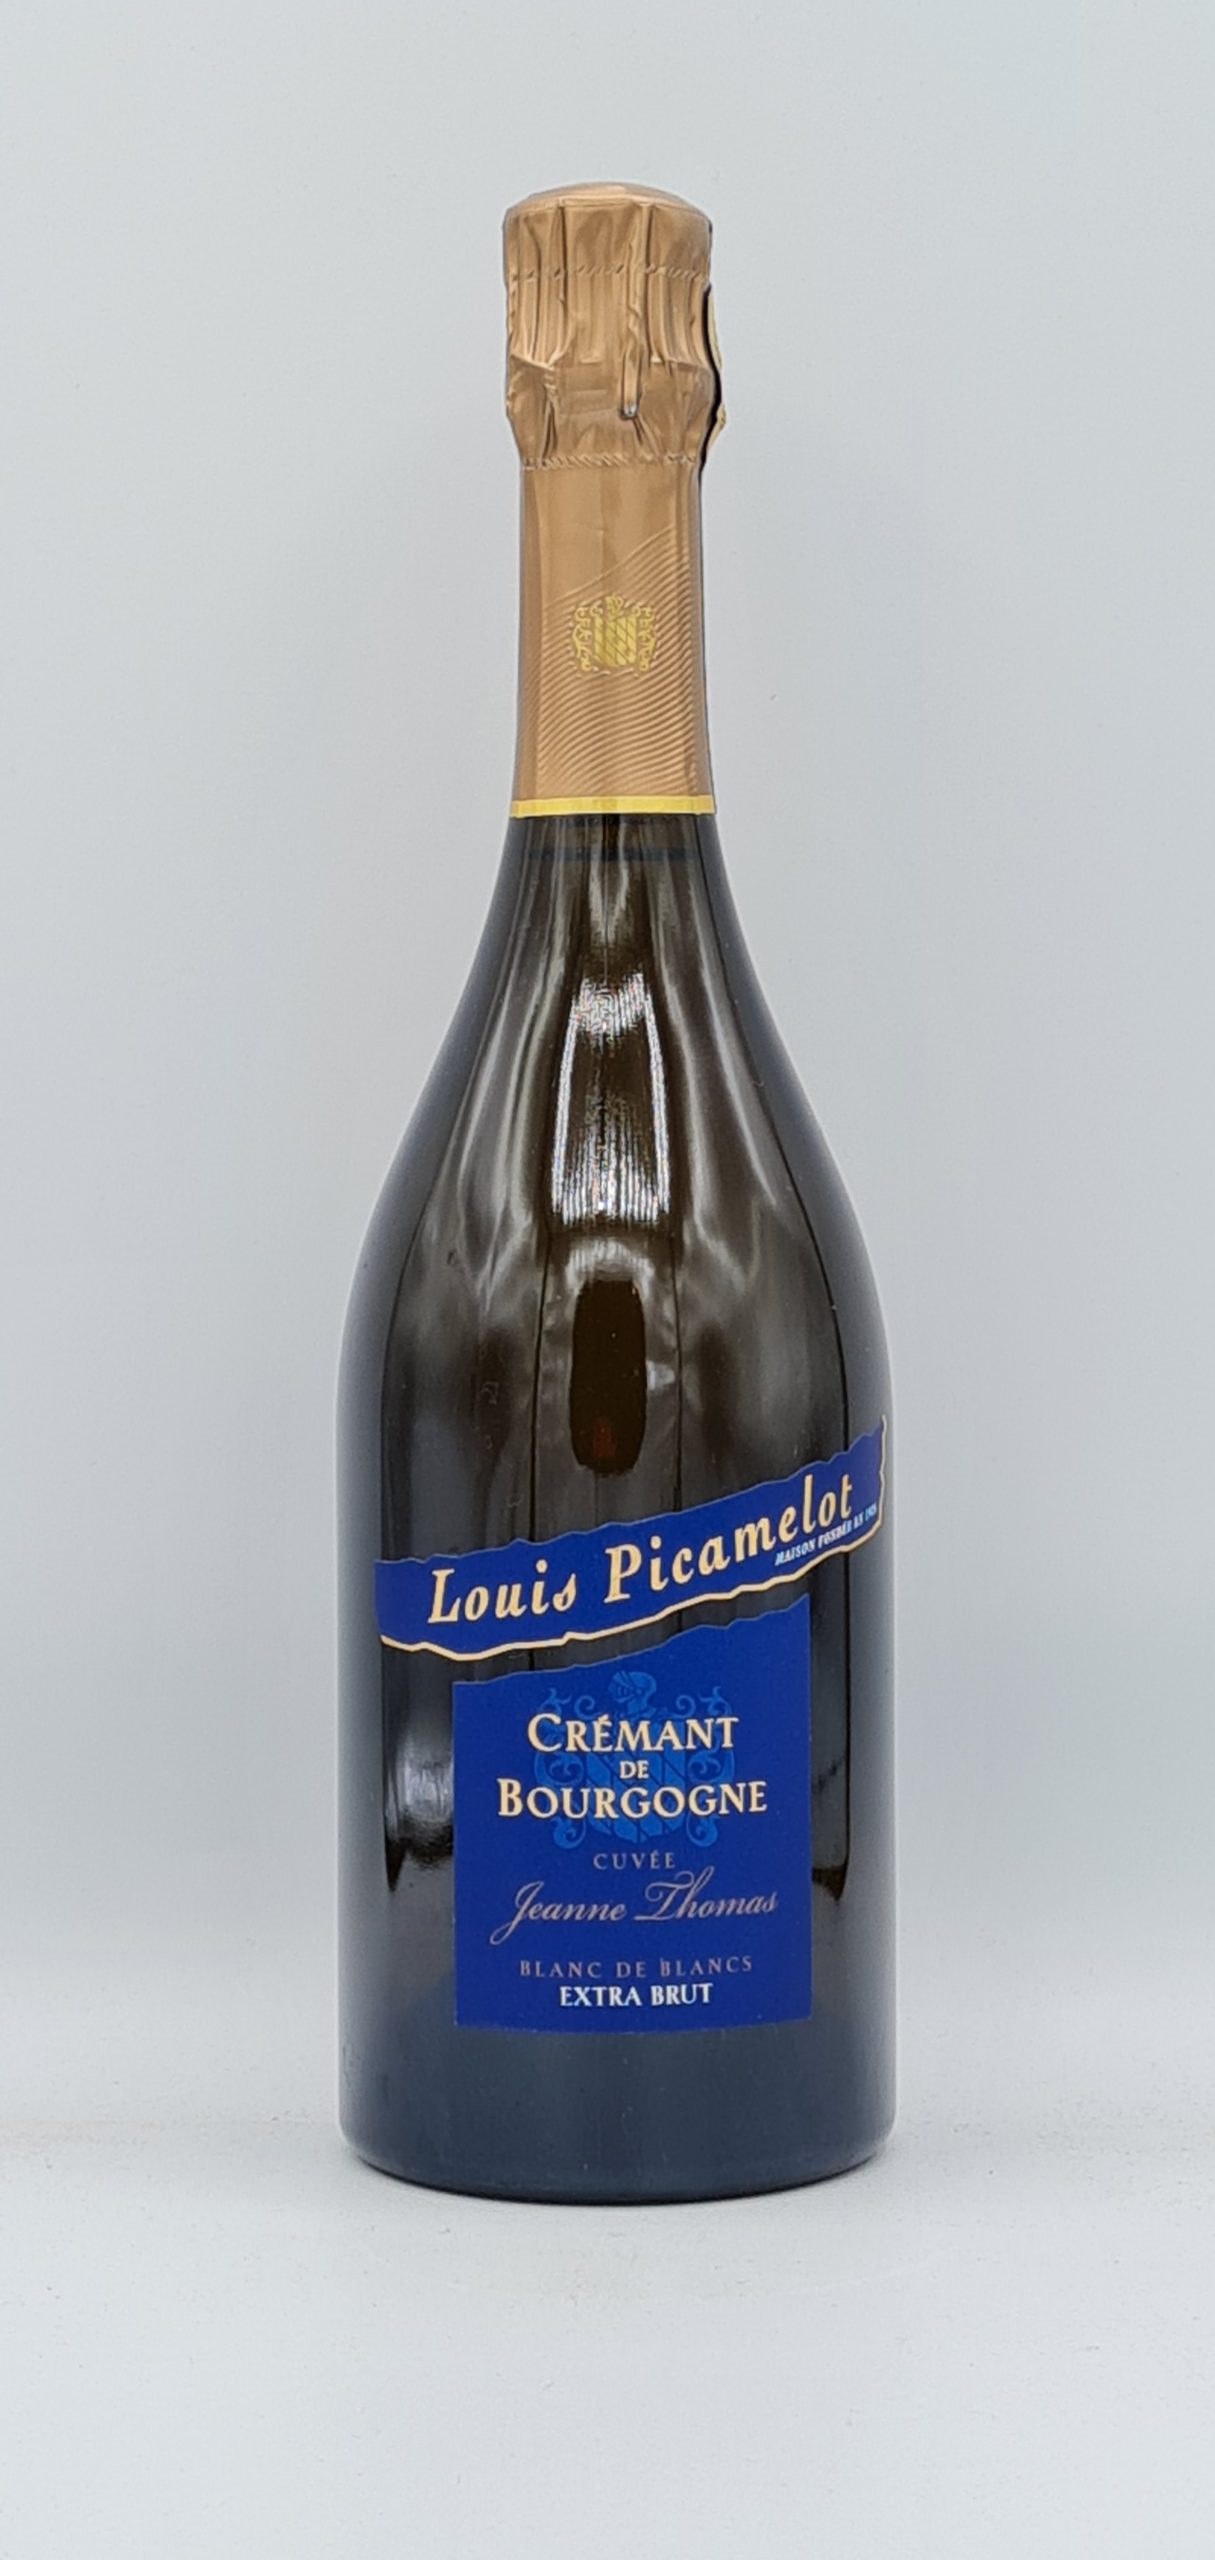 Crémant de Bourgogne Blanc de Blanc “Cuvée Jeanne Thomas” Maison Picamelot